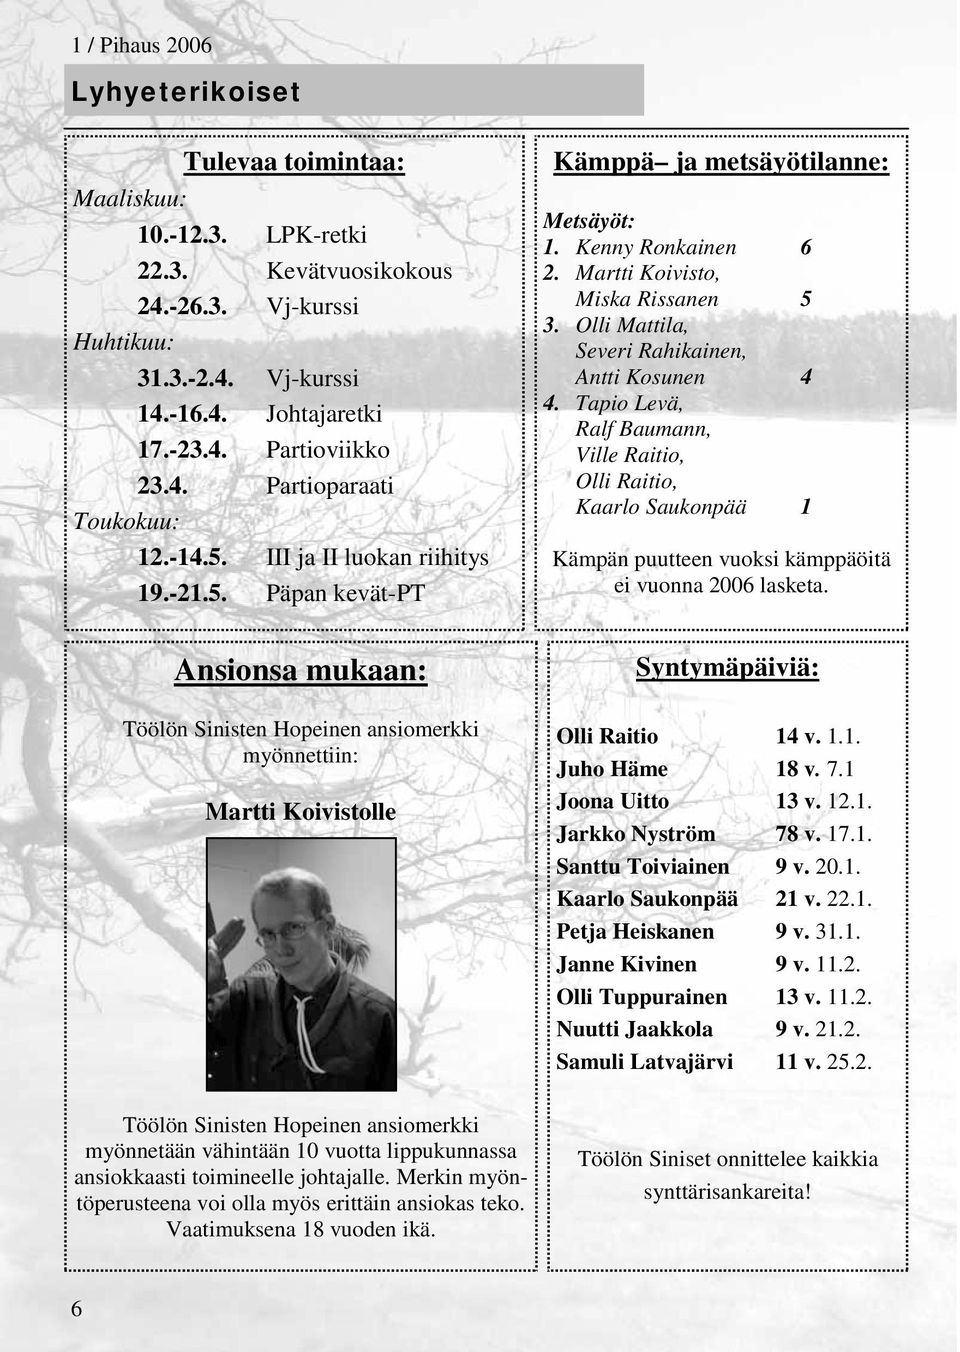 Olli Mattila, Severi Rahikainen, Antti Kosunen 4 4. Tapio Levä, Ralf Baumann, Ville Raitio, Olli Raitio, Kaarlo Saukonpää 1 Kämpän puutteen vuoksi kämppäöitä ei vuonna 2006 lasketa.